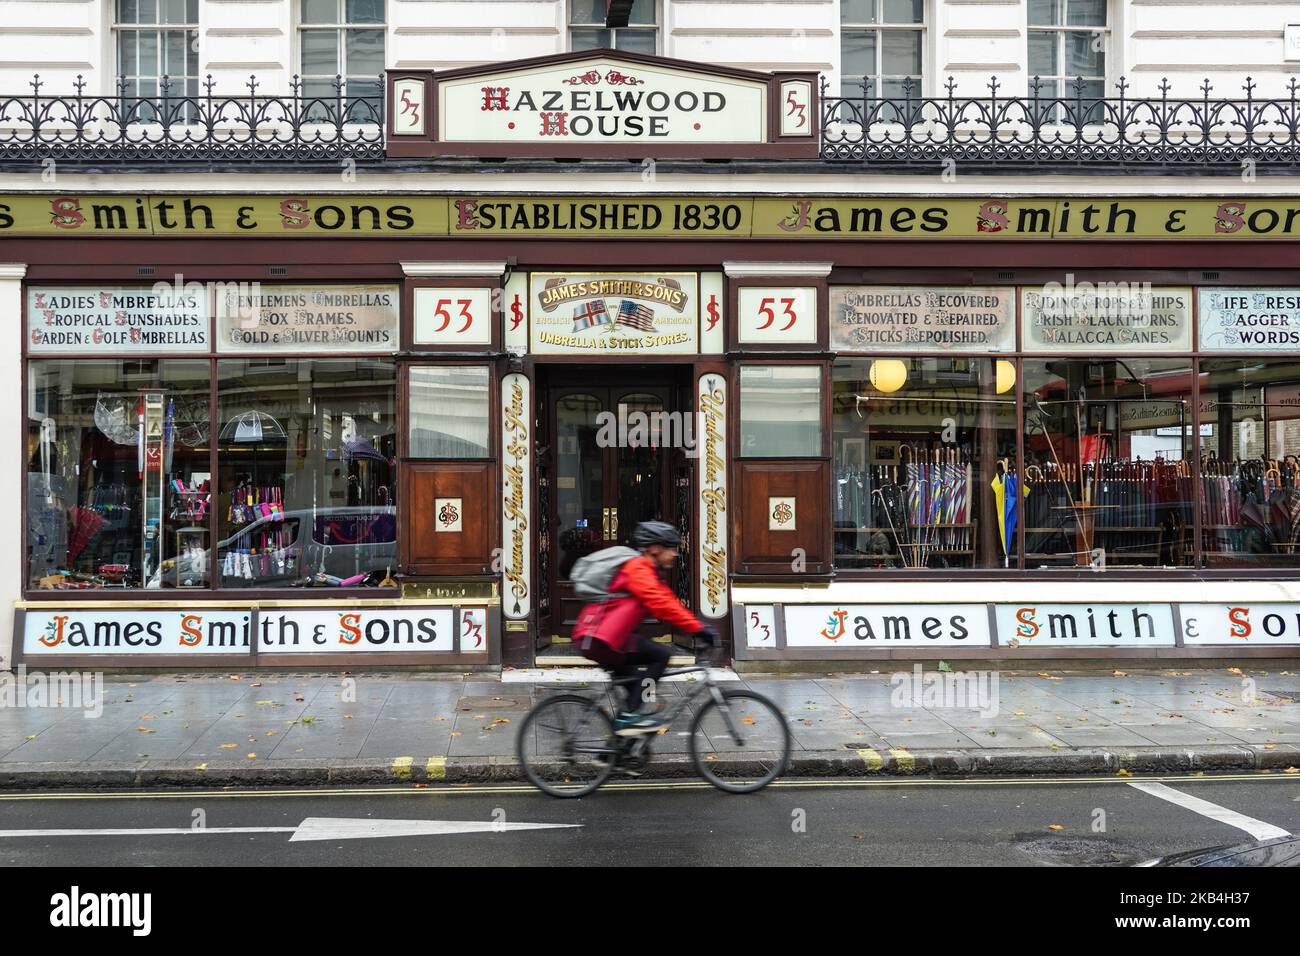 Boutique de parasols James Smith & Sons à Hazelwood House, New Oxford Street, Londres, Angleterre, Royaume-Uni Banque D'Images